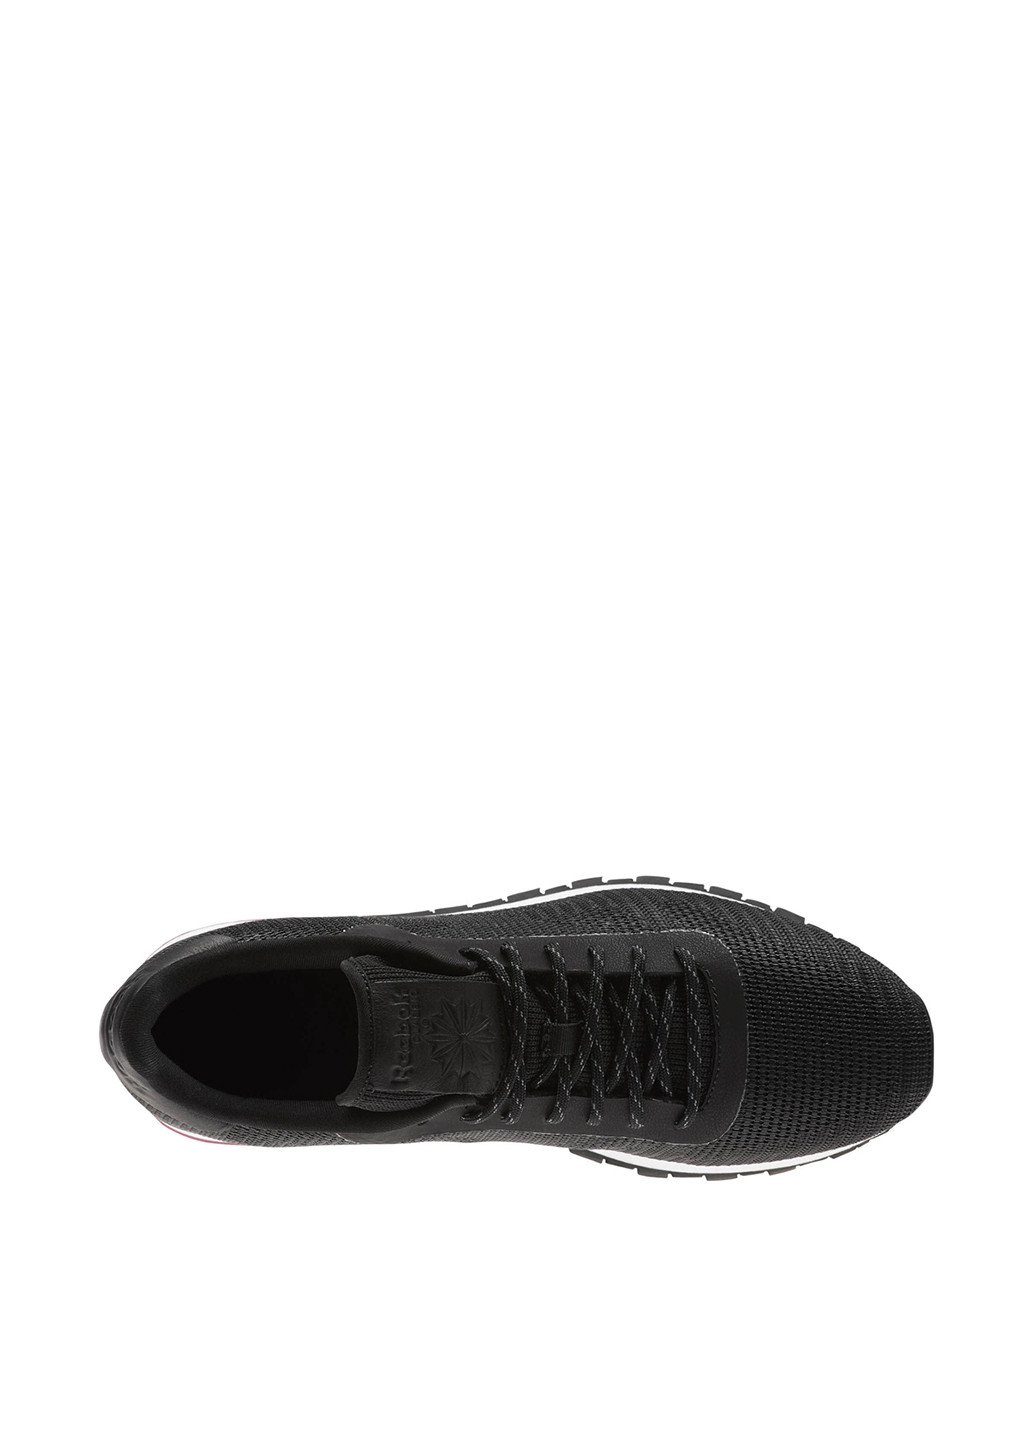 Черные всесезонные кроссовки Reebok Classics Leather